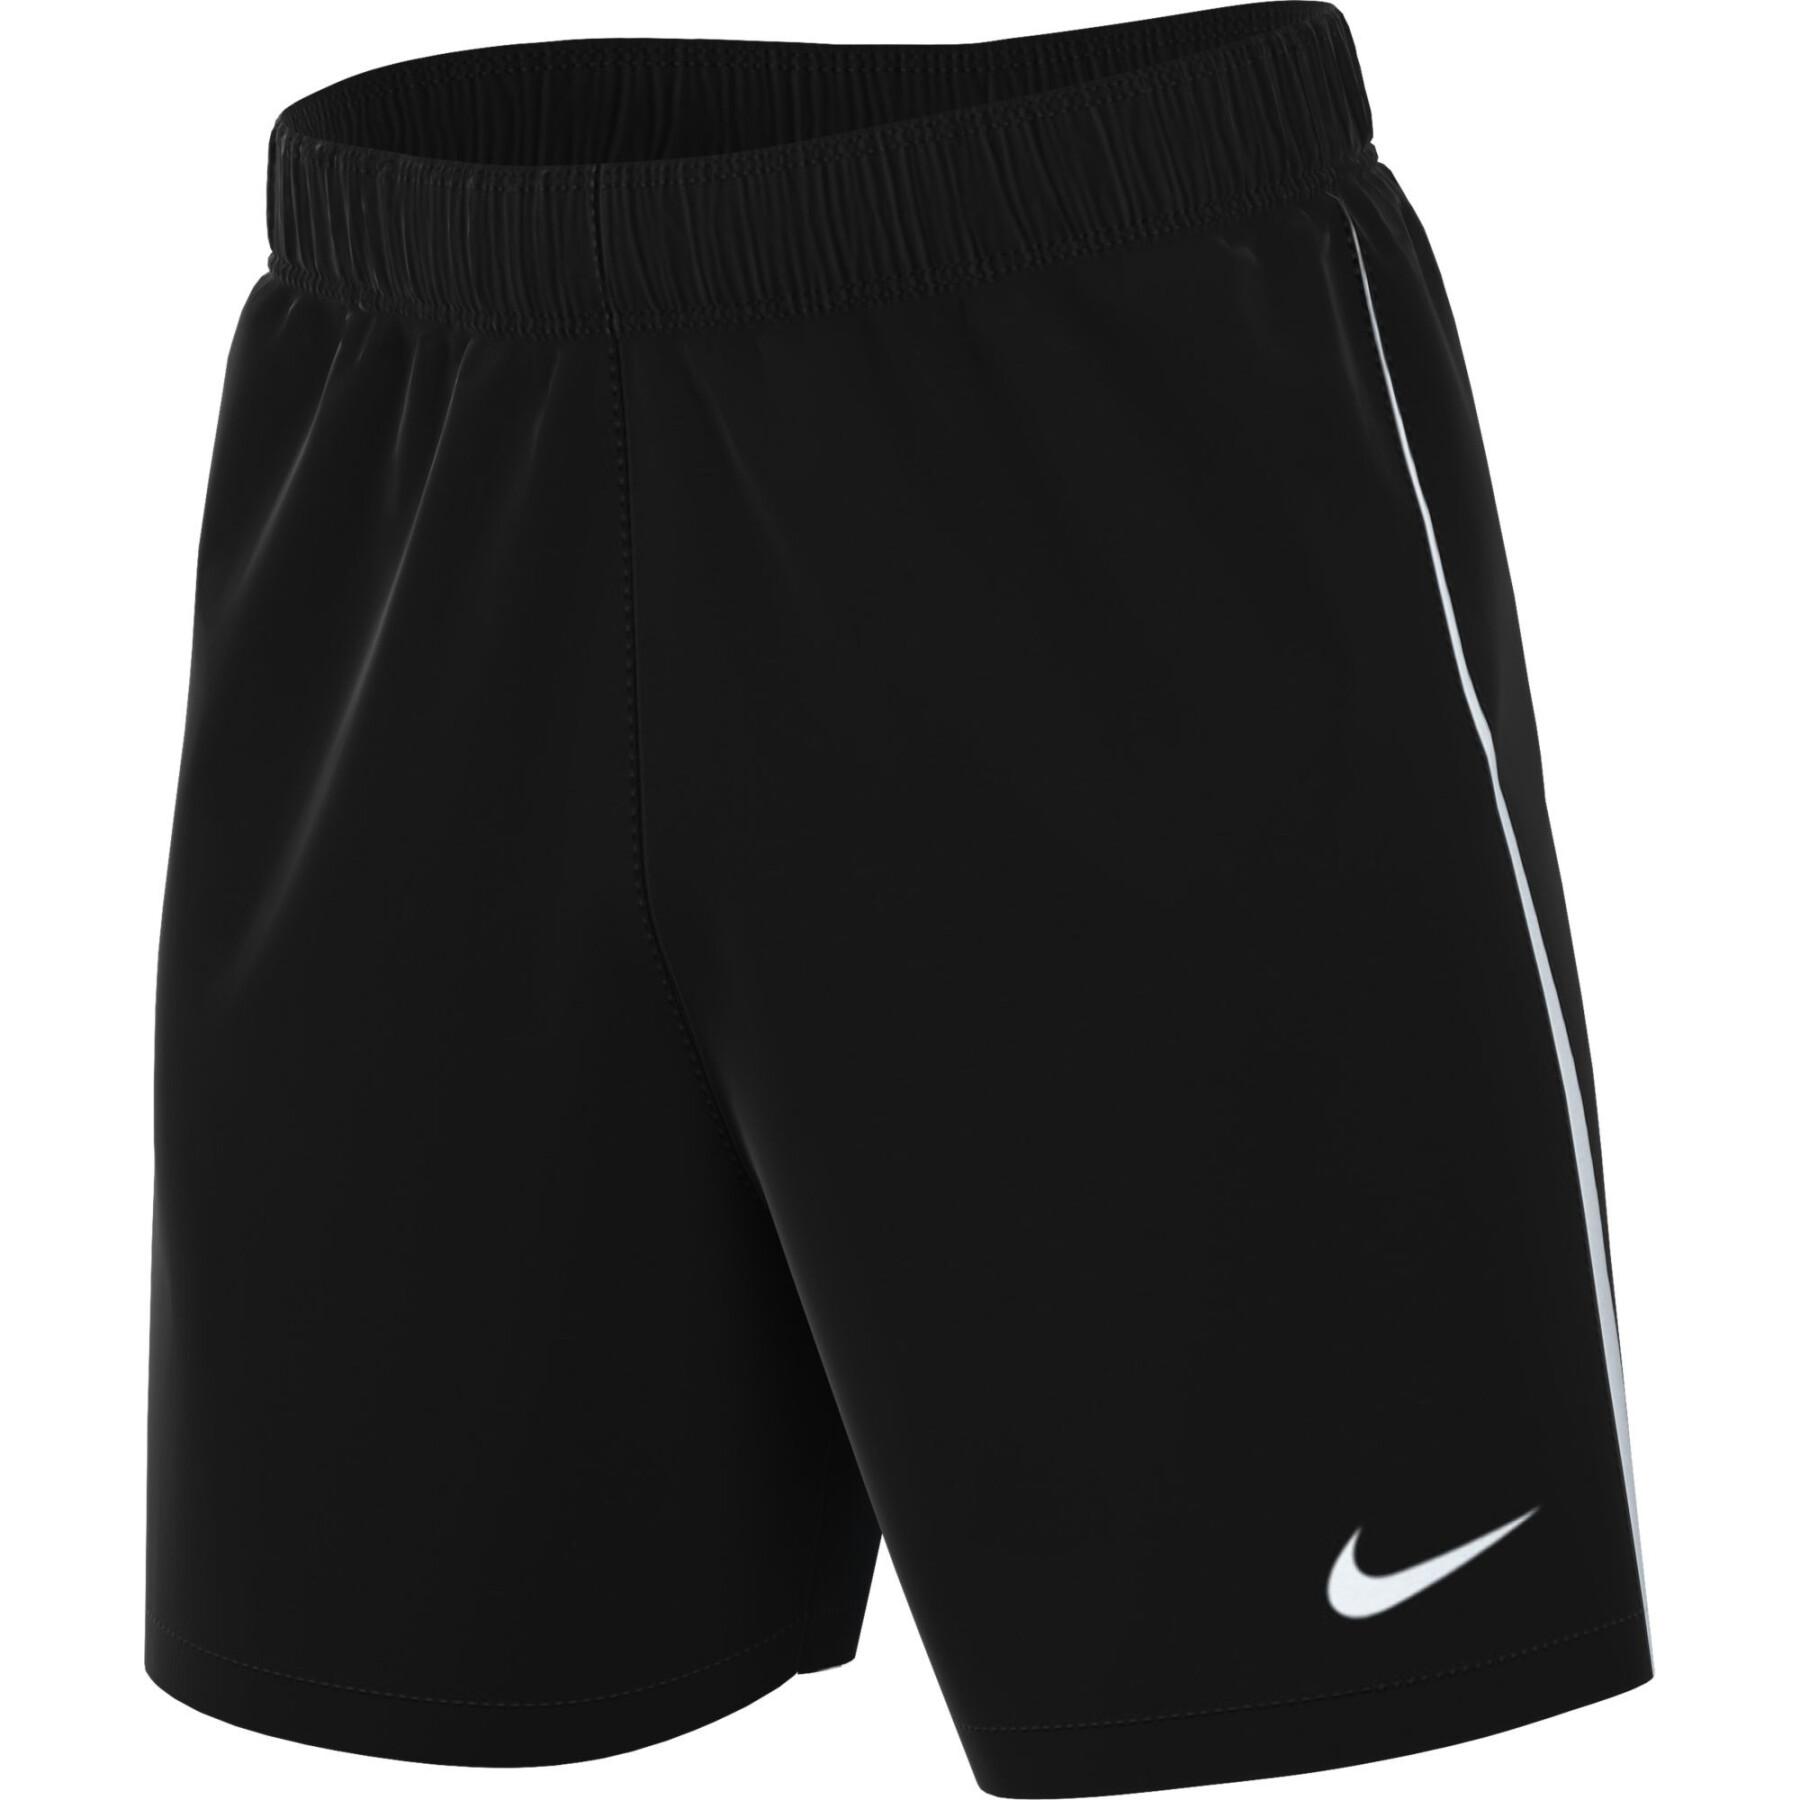 Stickade shorts Nike Dri-Fit LGE III